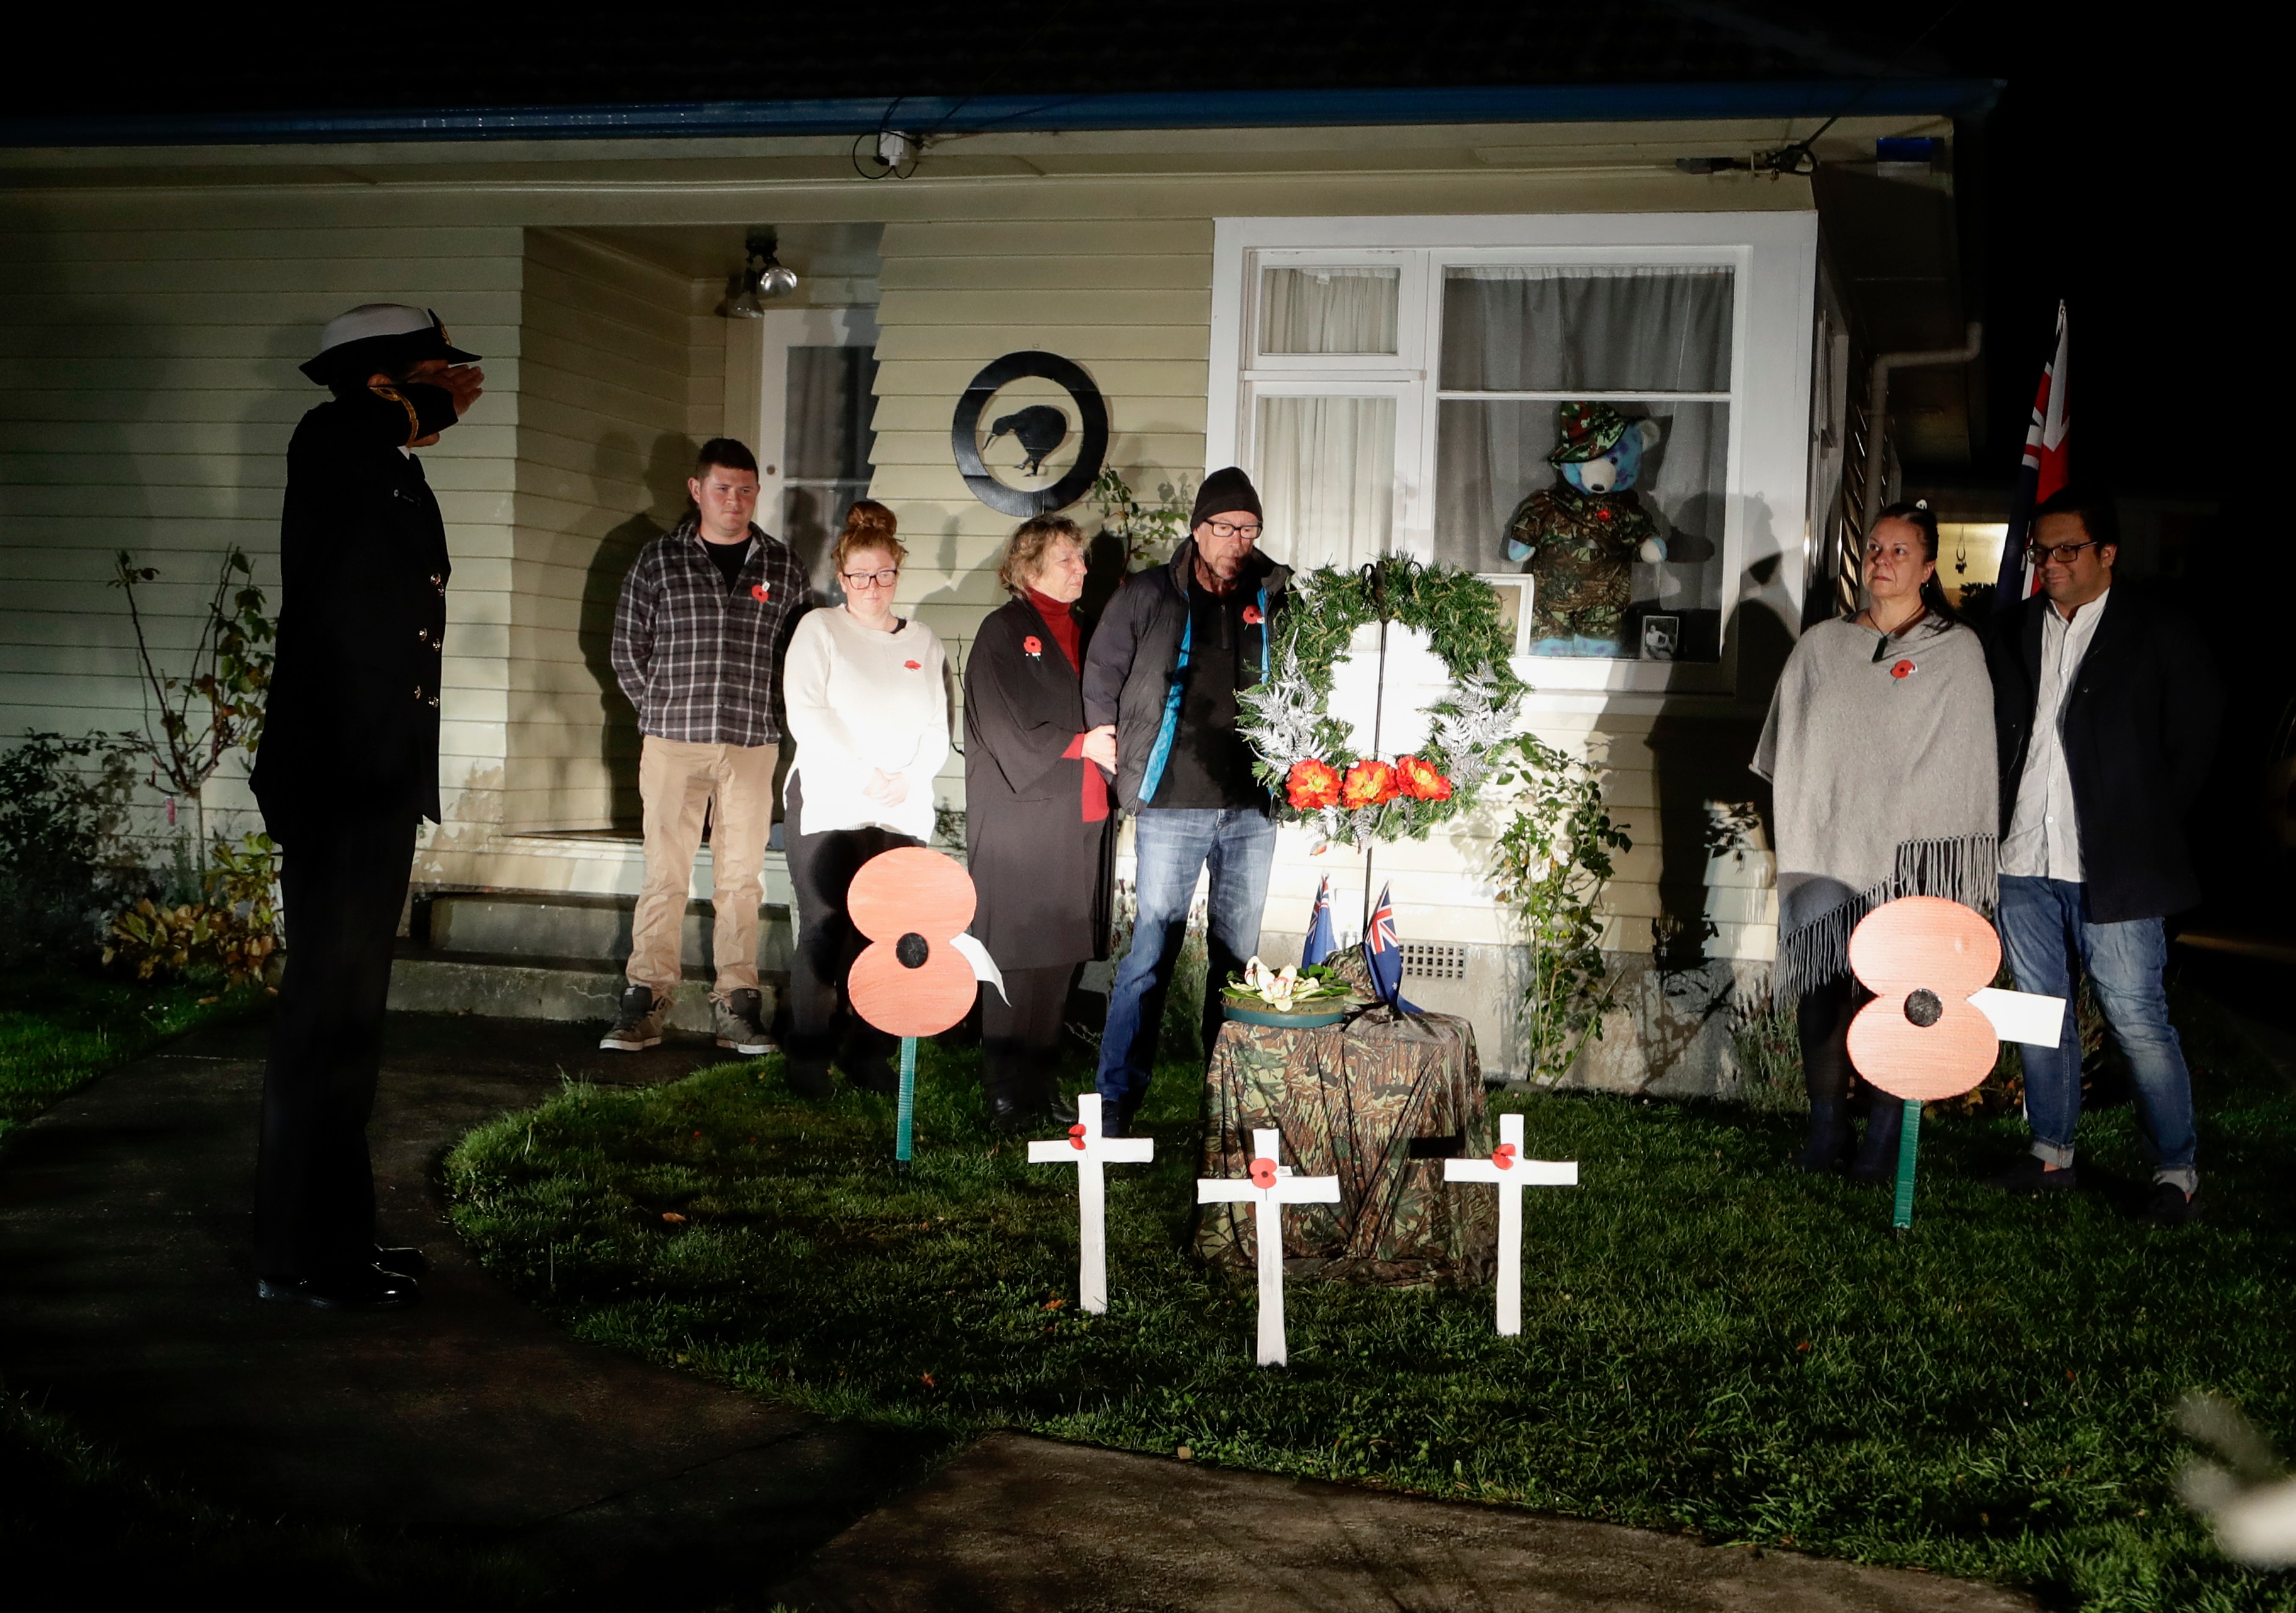 يجتمع الجيران عند الفجر لإحياء ذكرى يوم أنزاك في إحدى ضواحي كرايستشيرش ، نيوزيلندا.